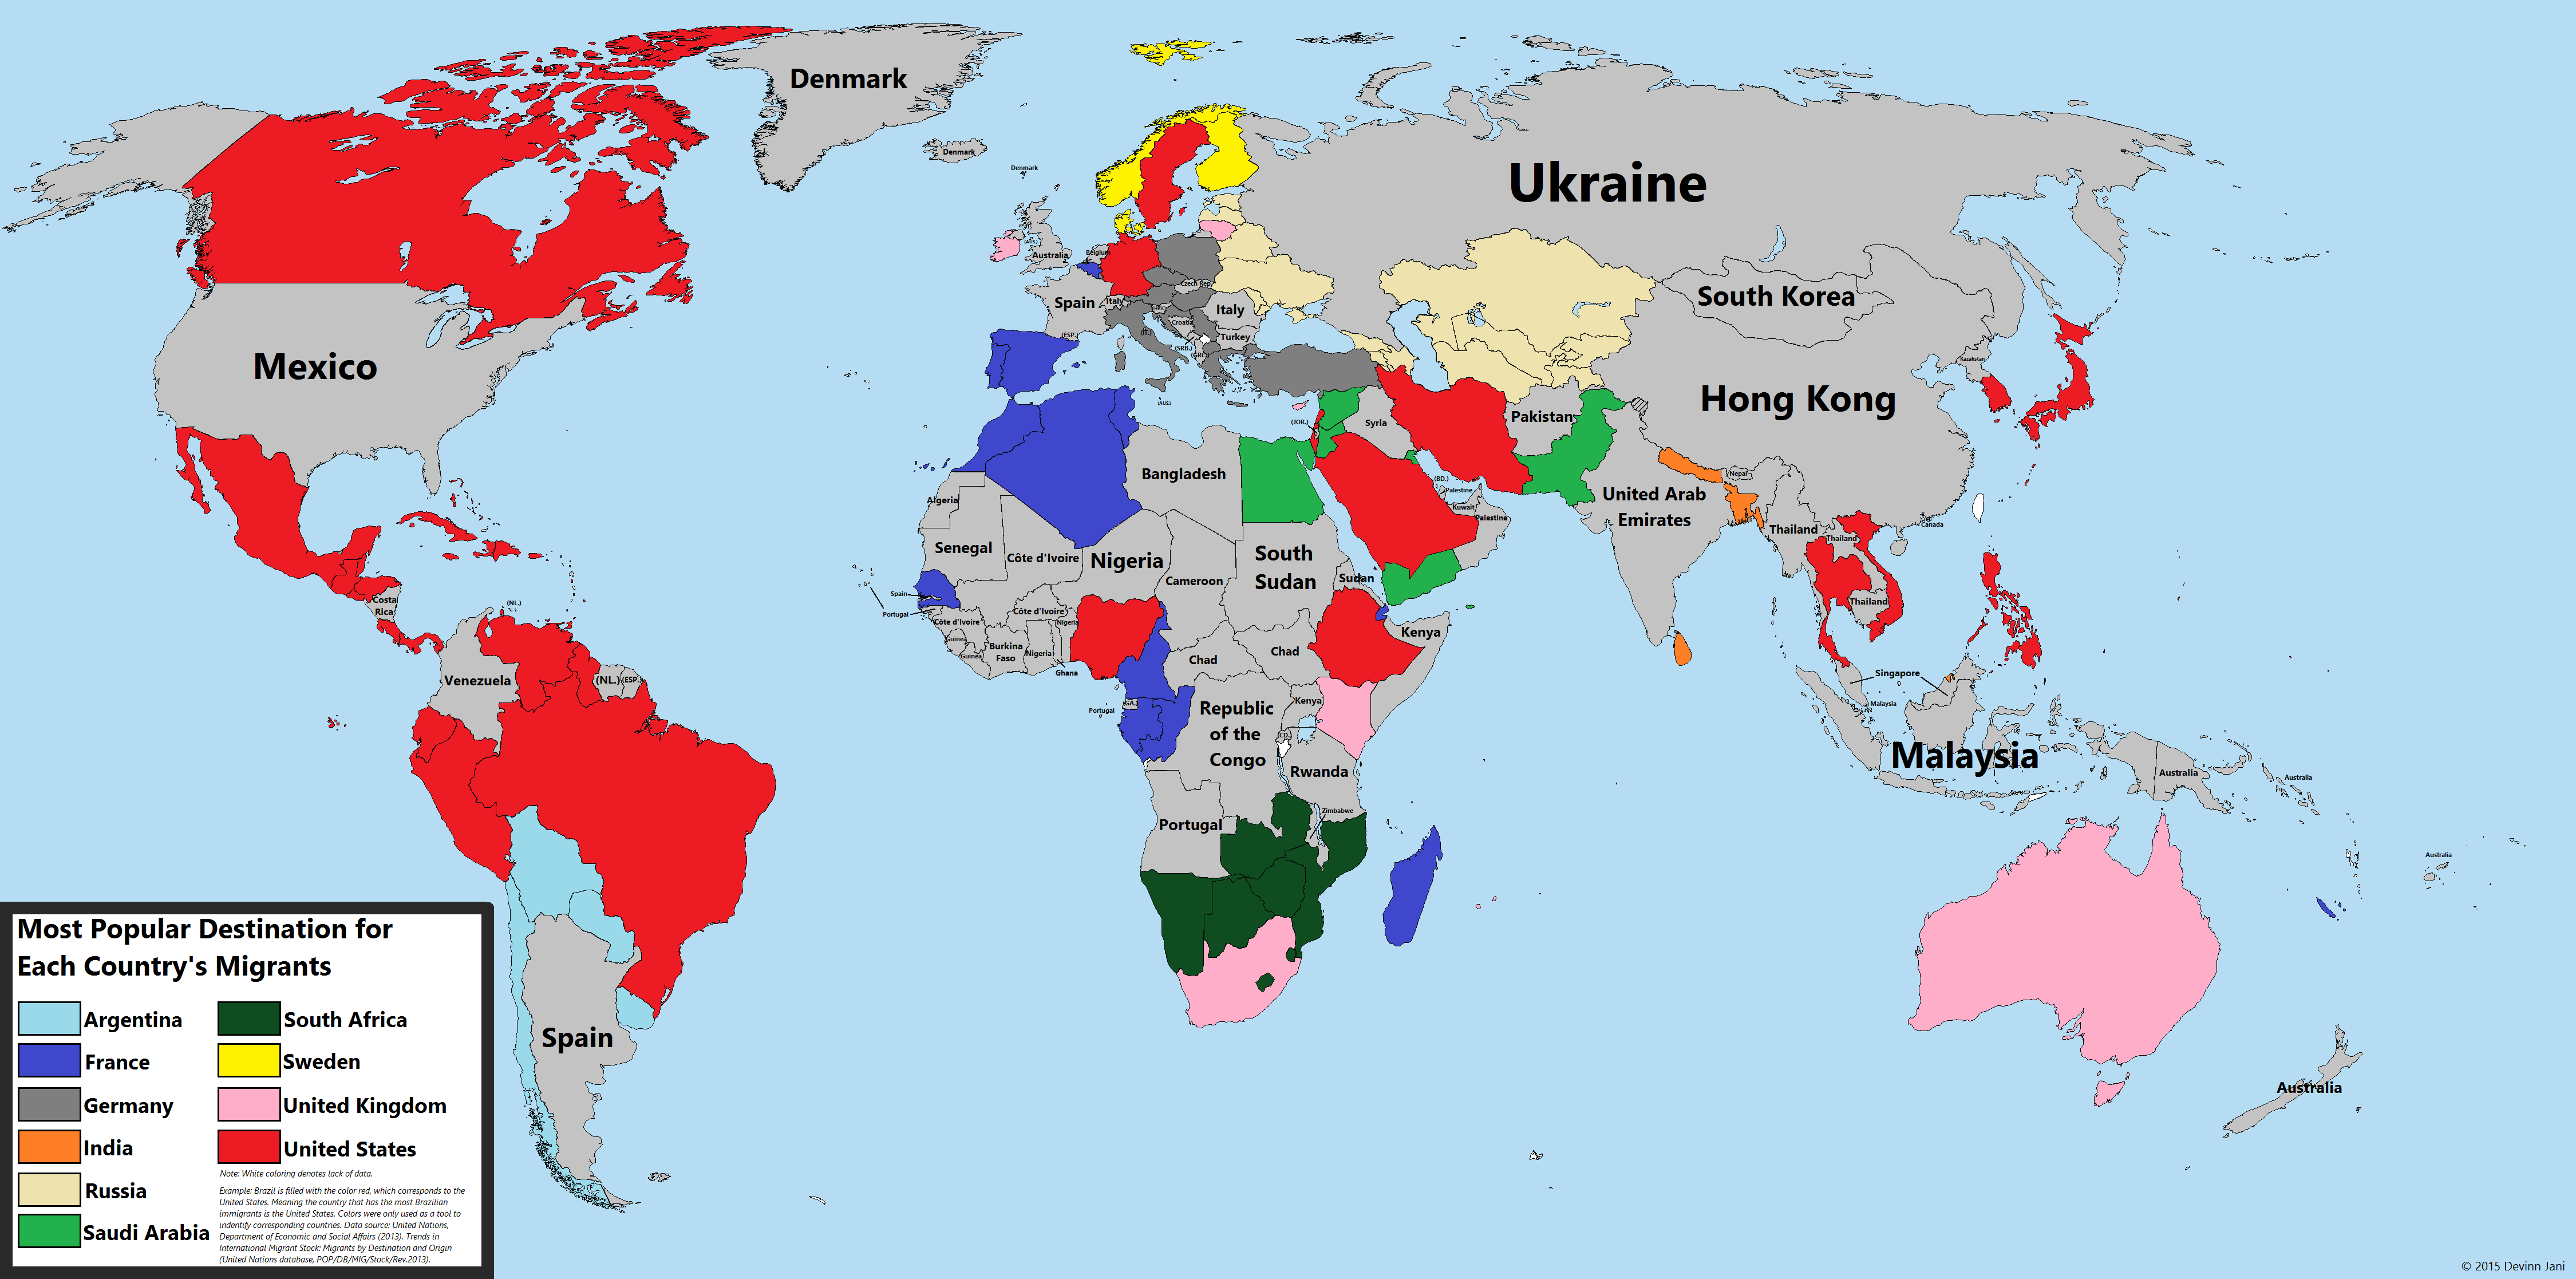 La mappa mostra per ogni paese la nazione meta del maggior numero di migranti (fonte: DMan9797 via Reddit.com)